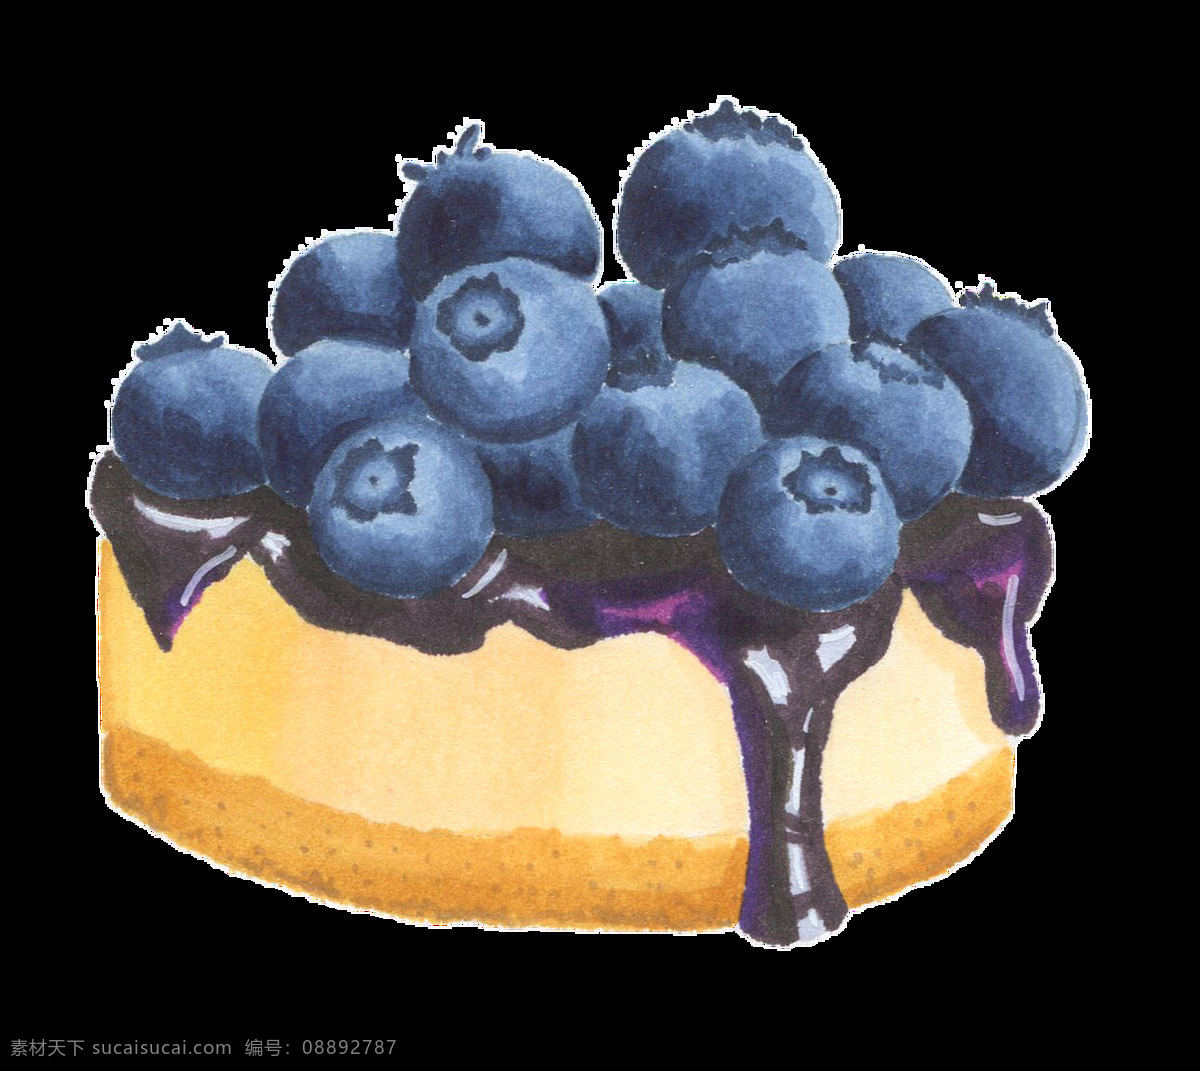 蓝莓 蛋糕 卡通 透明 装饰 抠图专用 设计素材